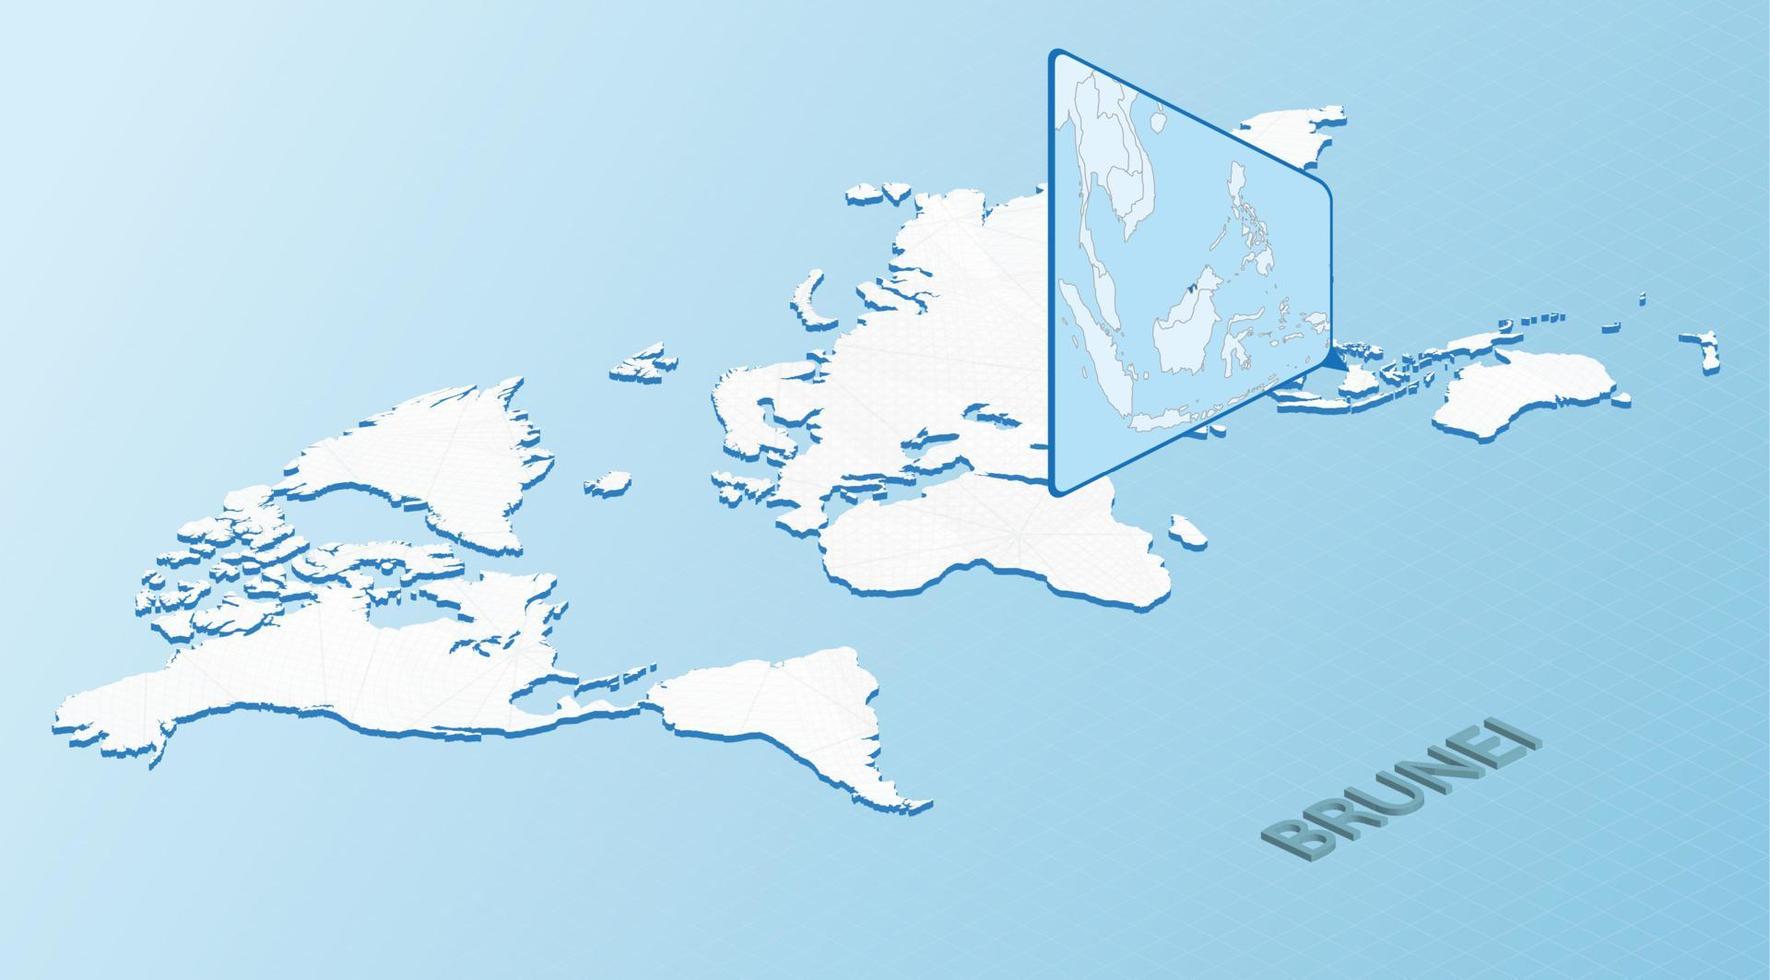 carte du monde dans un style isométrique avec carte détaillée de brunei. carte brunei bleu clair avec carte du monde abstraite. vecteur